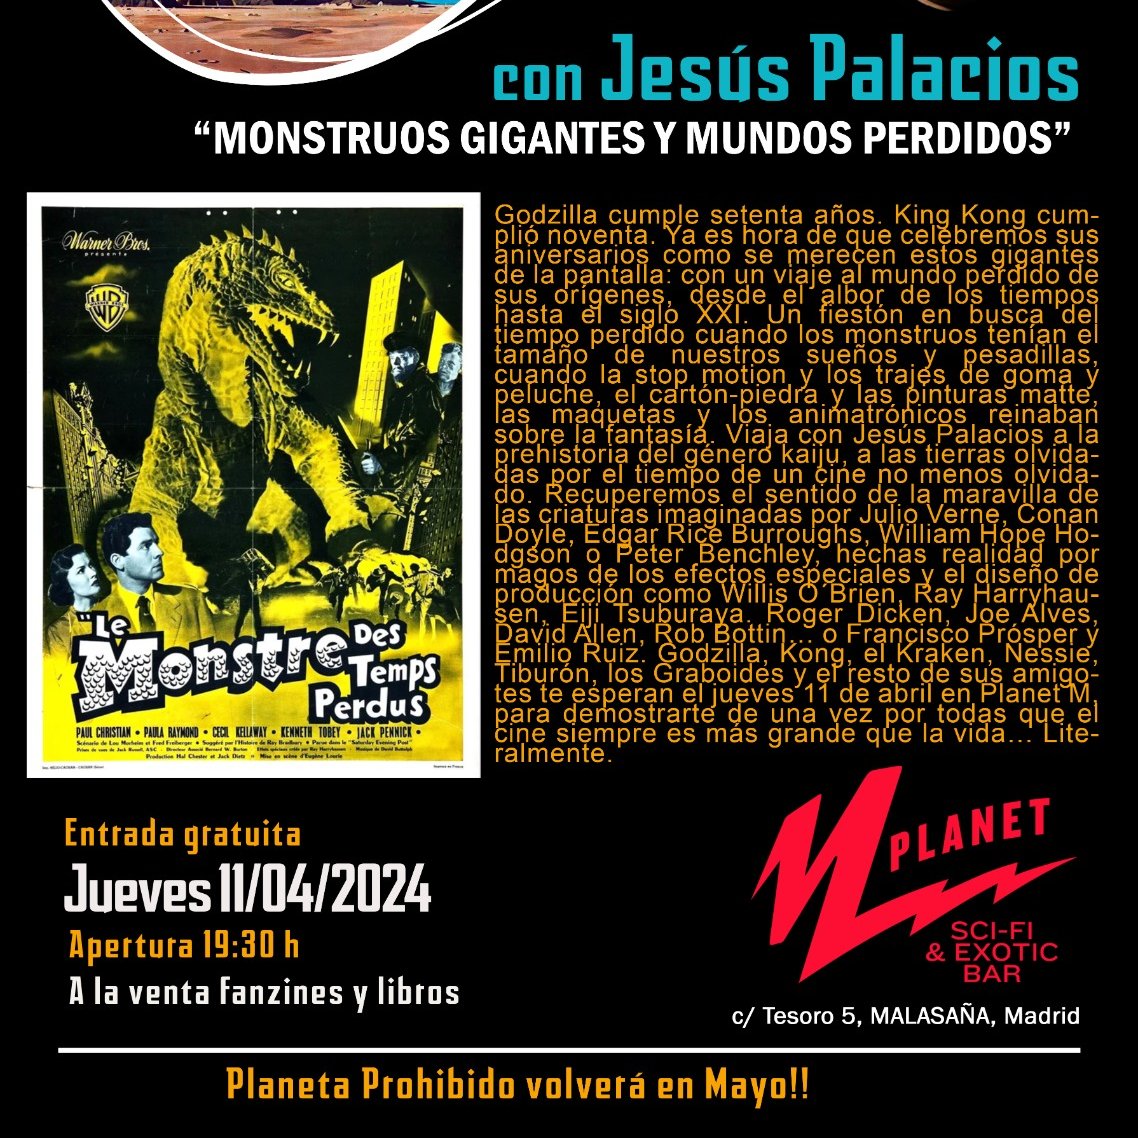 🦕11/04/2024🦖
#CharlasDeCine de #jesuspalacios
En el Planet M  Scifi & Exotic Bar en Malasaña, Madrid.
#cine #historiadelcine #Cinedegenero #pulpfiction #monstruos #MundosPerdidos #PlanetM🚀